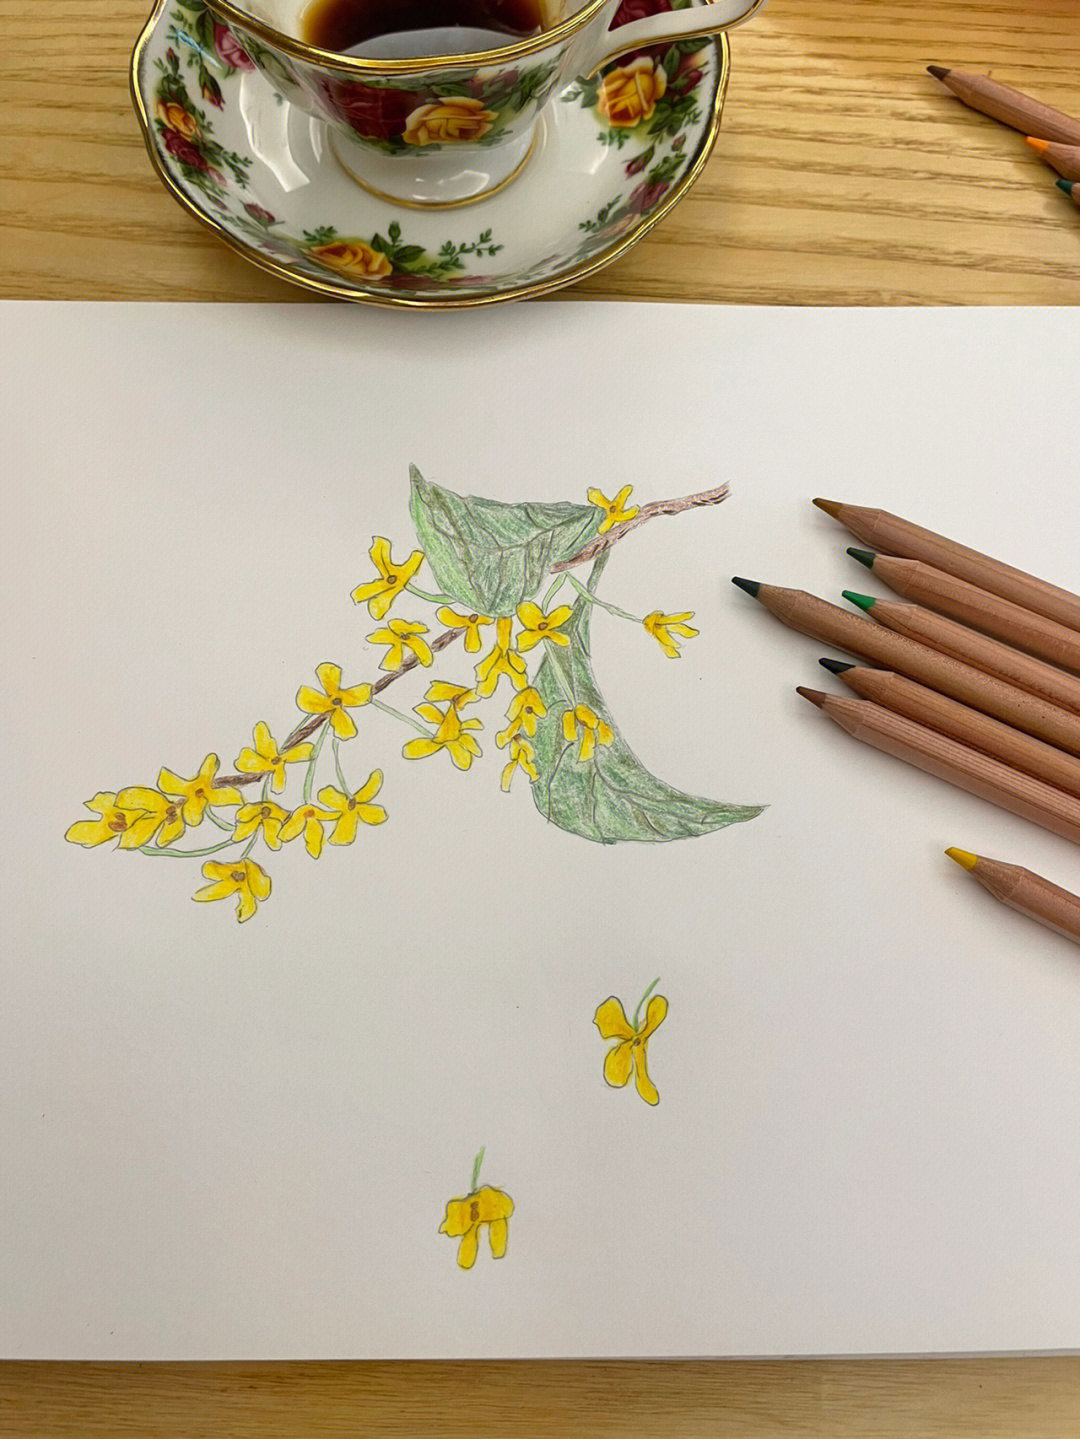 桂花树绘画图片幼儿图片